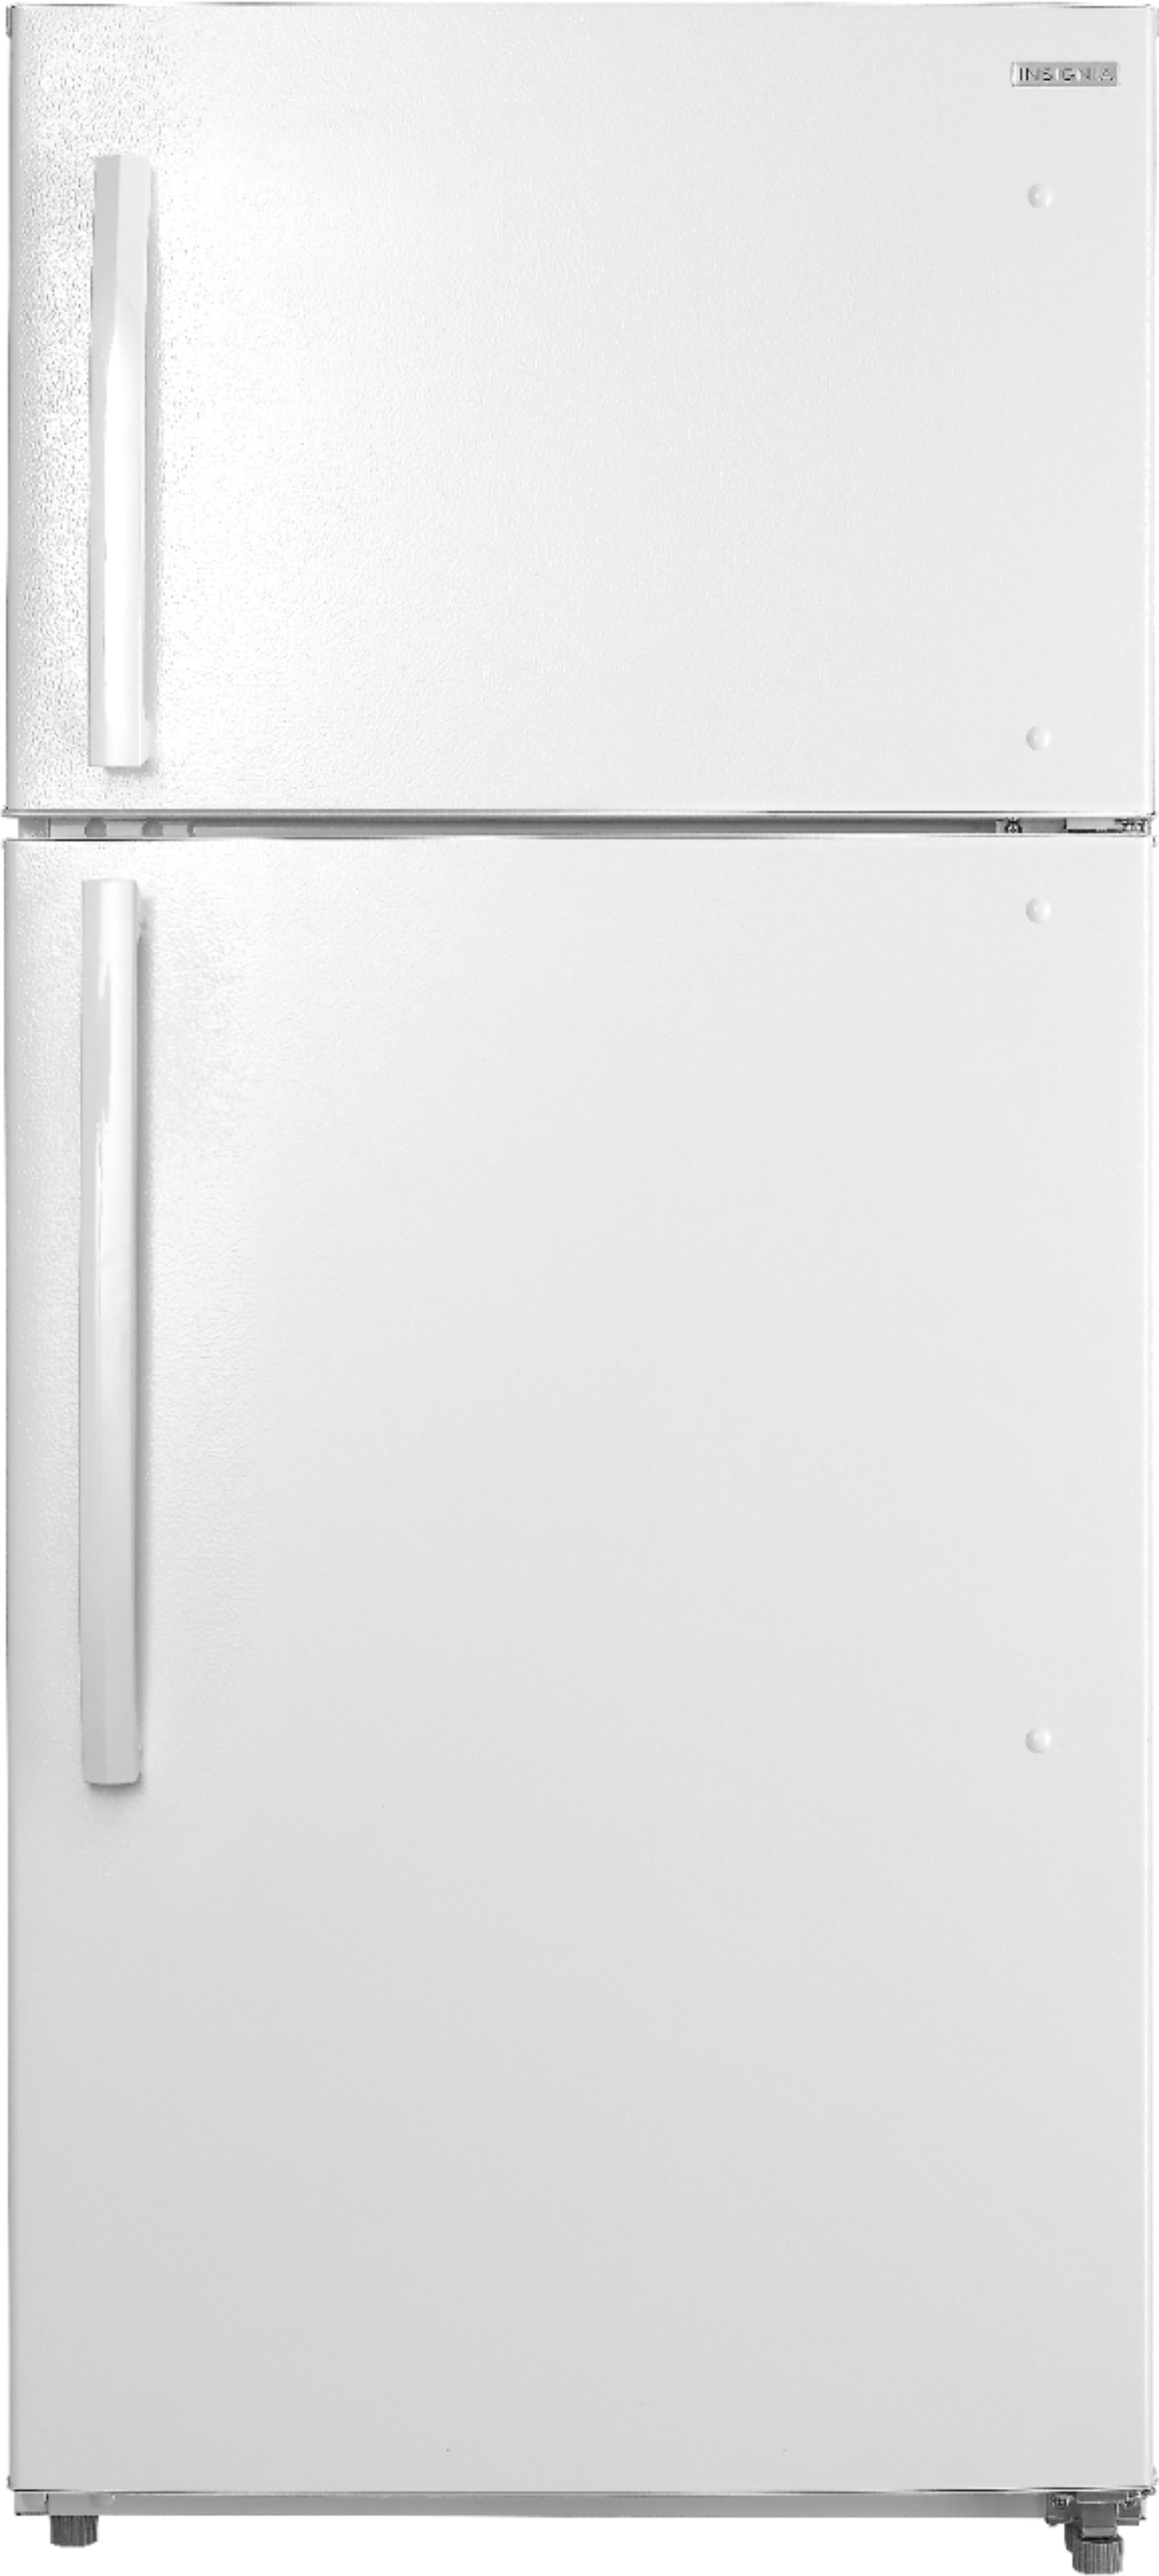 white fridge